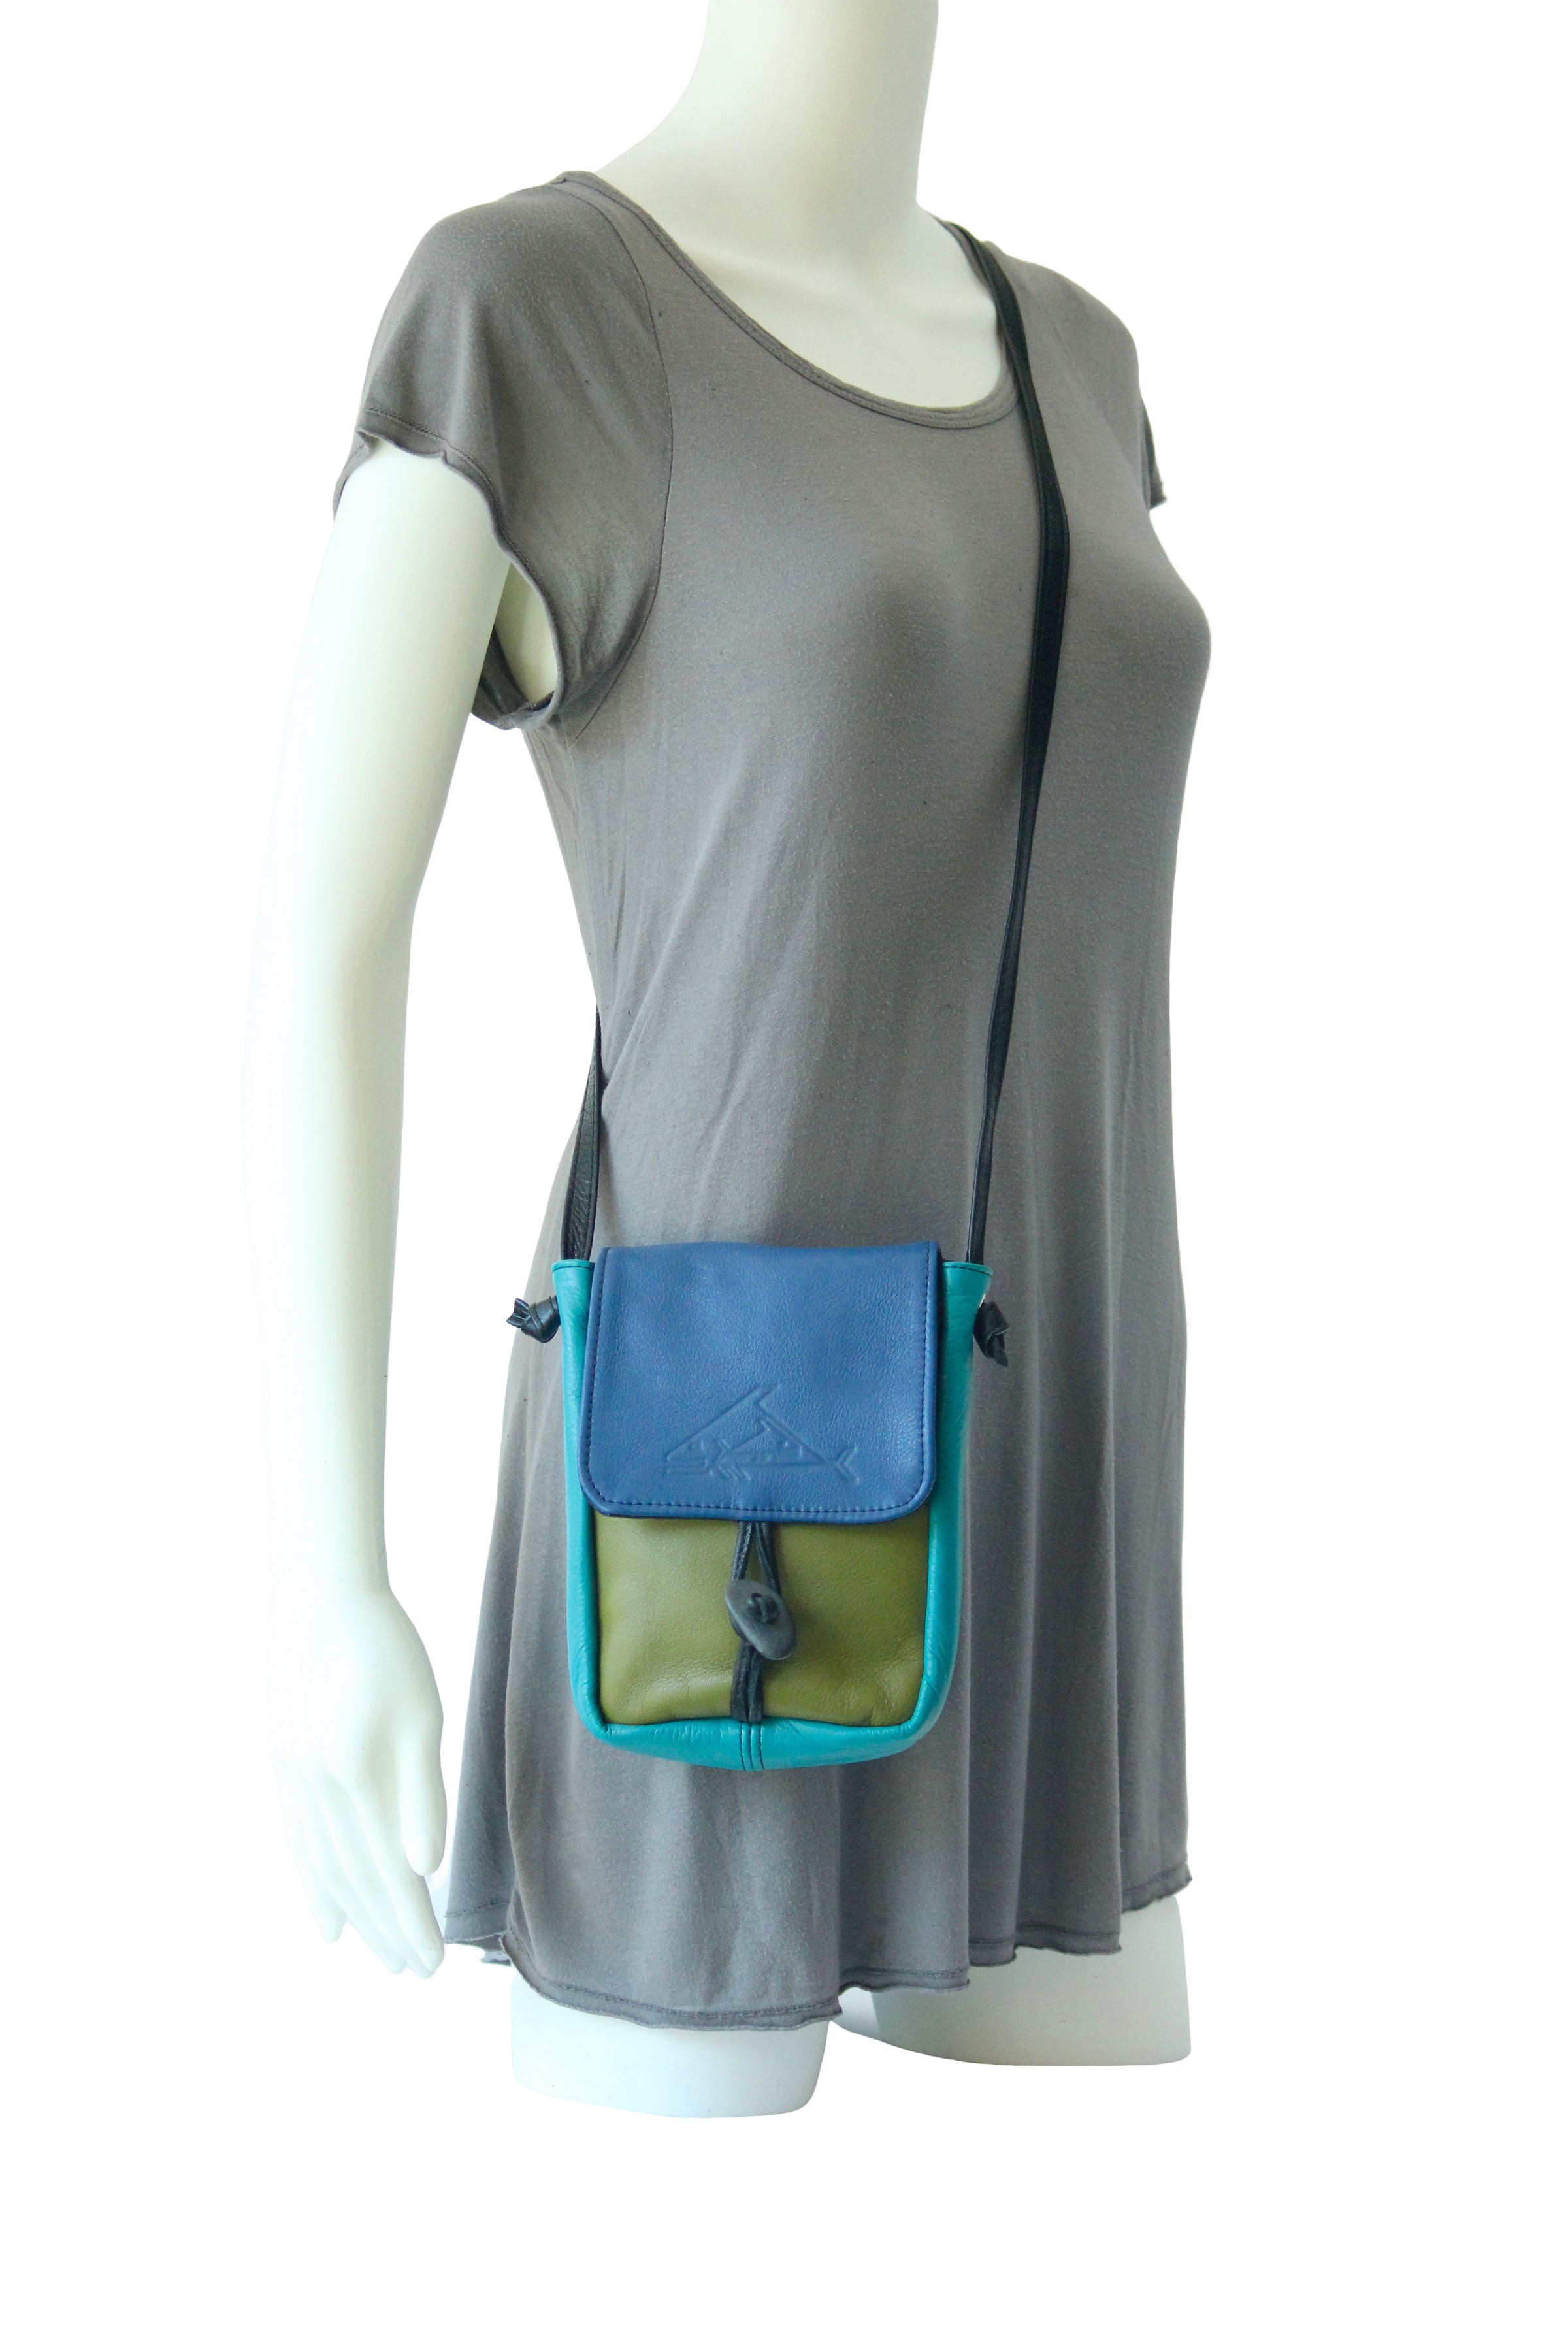 Cross Body Bag Purses for Women Light Weight, Small Purse PU Leather,light  grey,light grey，G111081 - Walmart.com